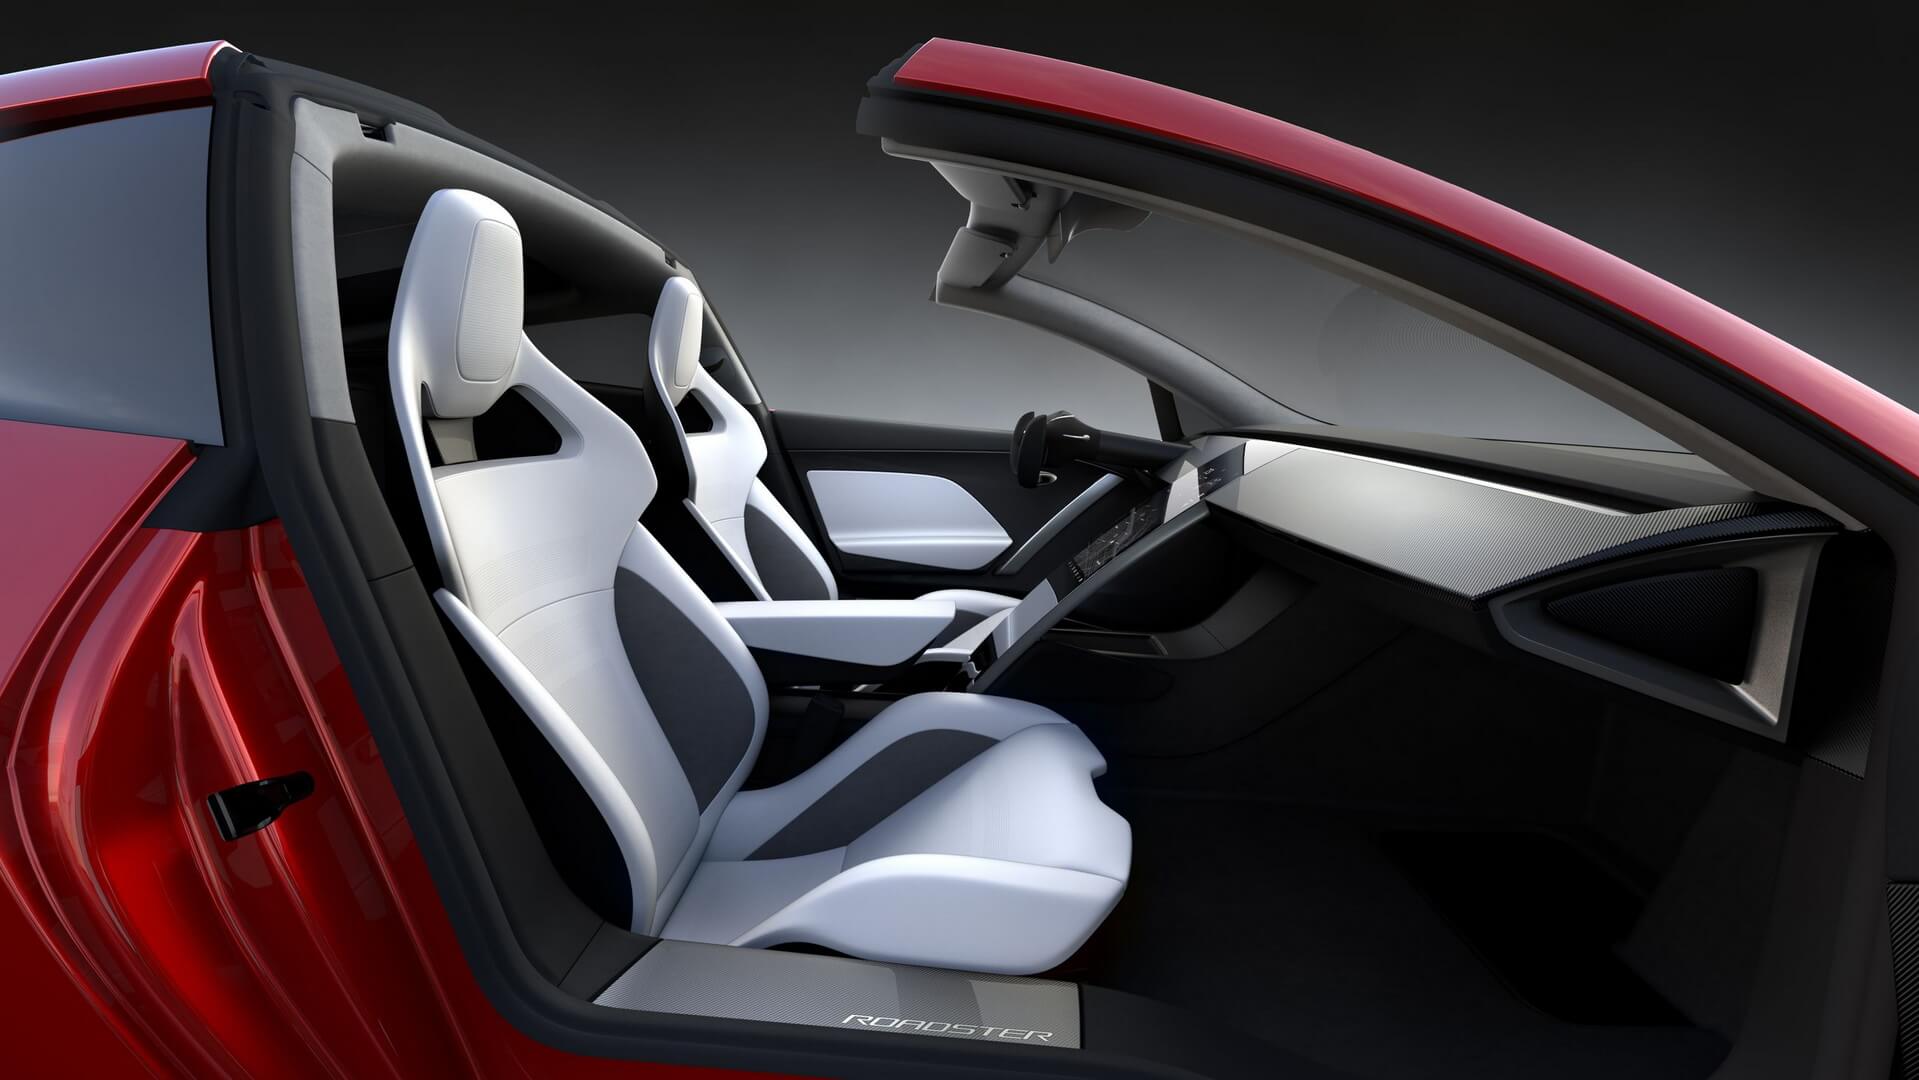 Салон спорткара Tesla Roadster нового поколения со съемной панорамной крышей